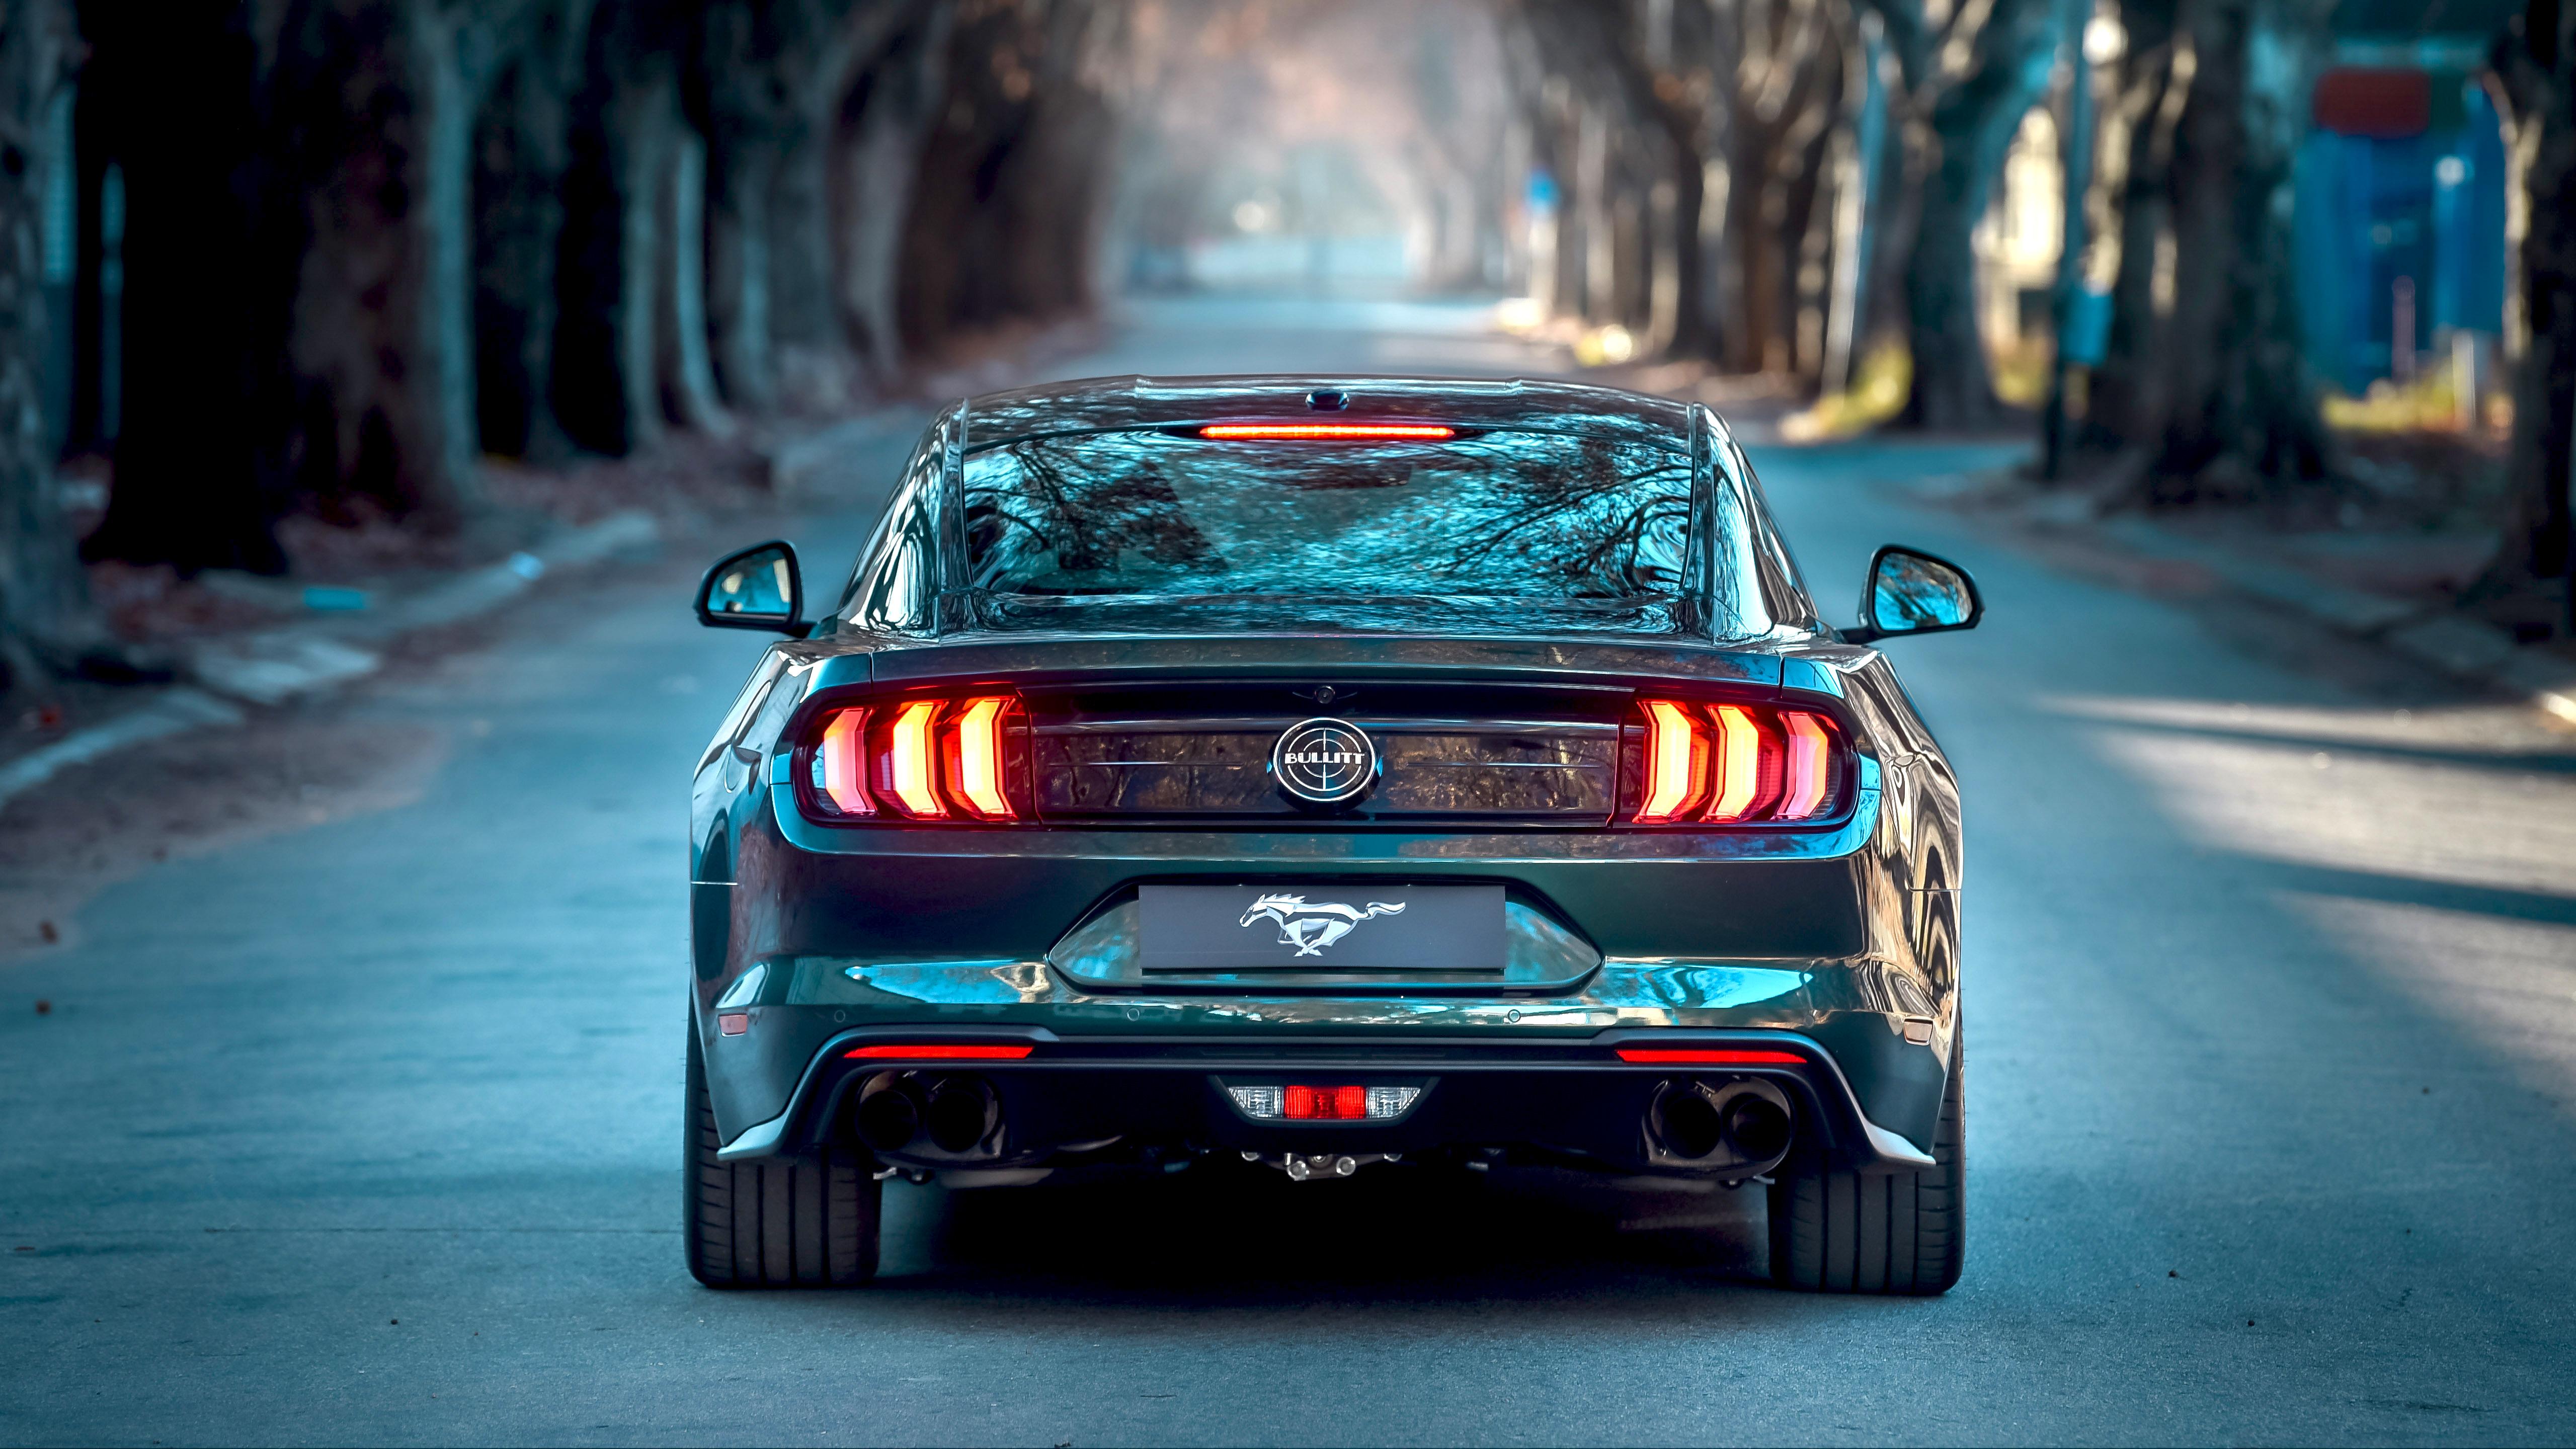 Ford Mustang Bullitt 2019 5K Wallpaper